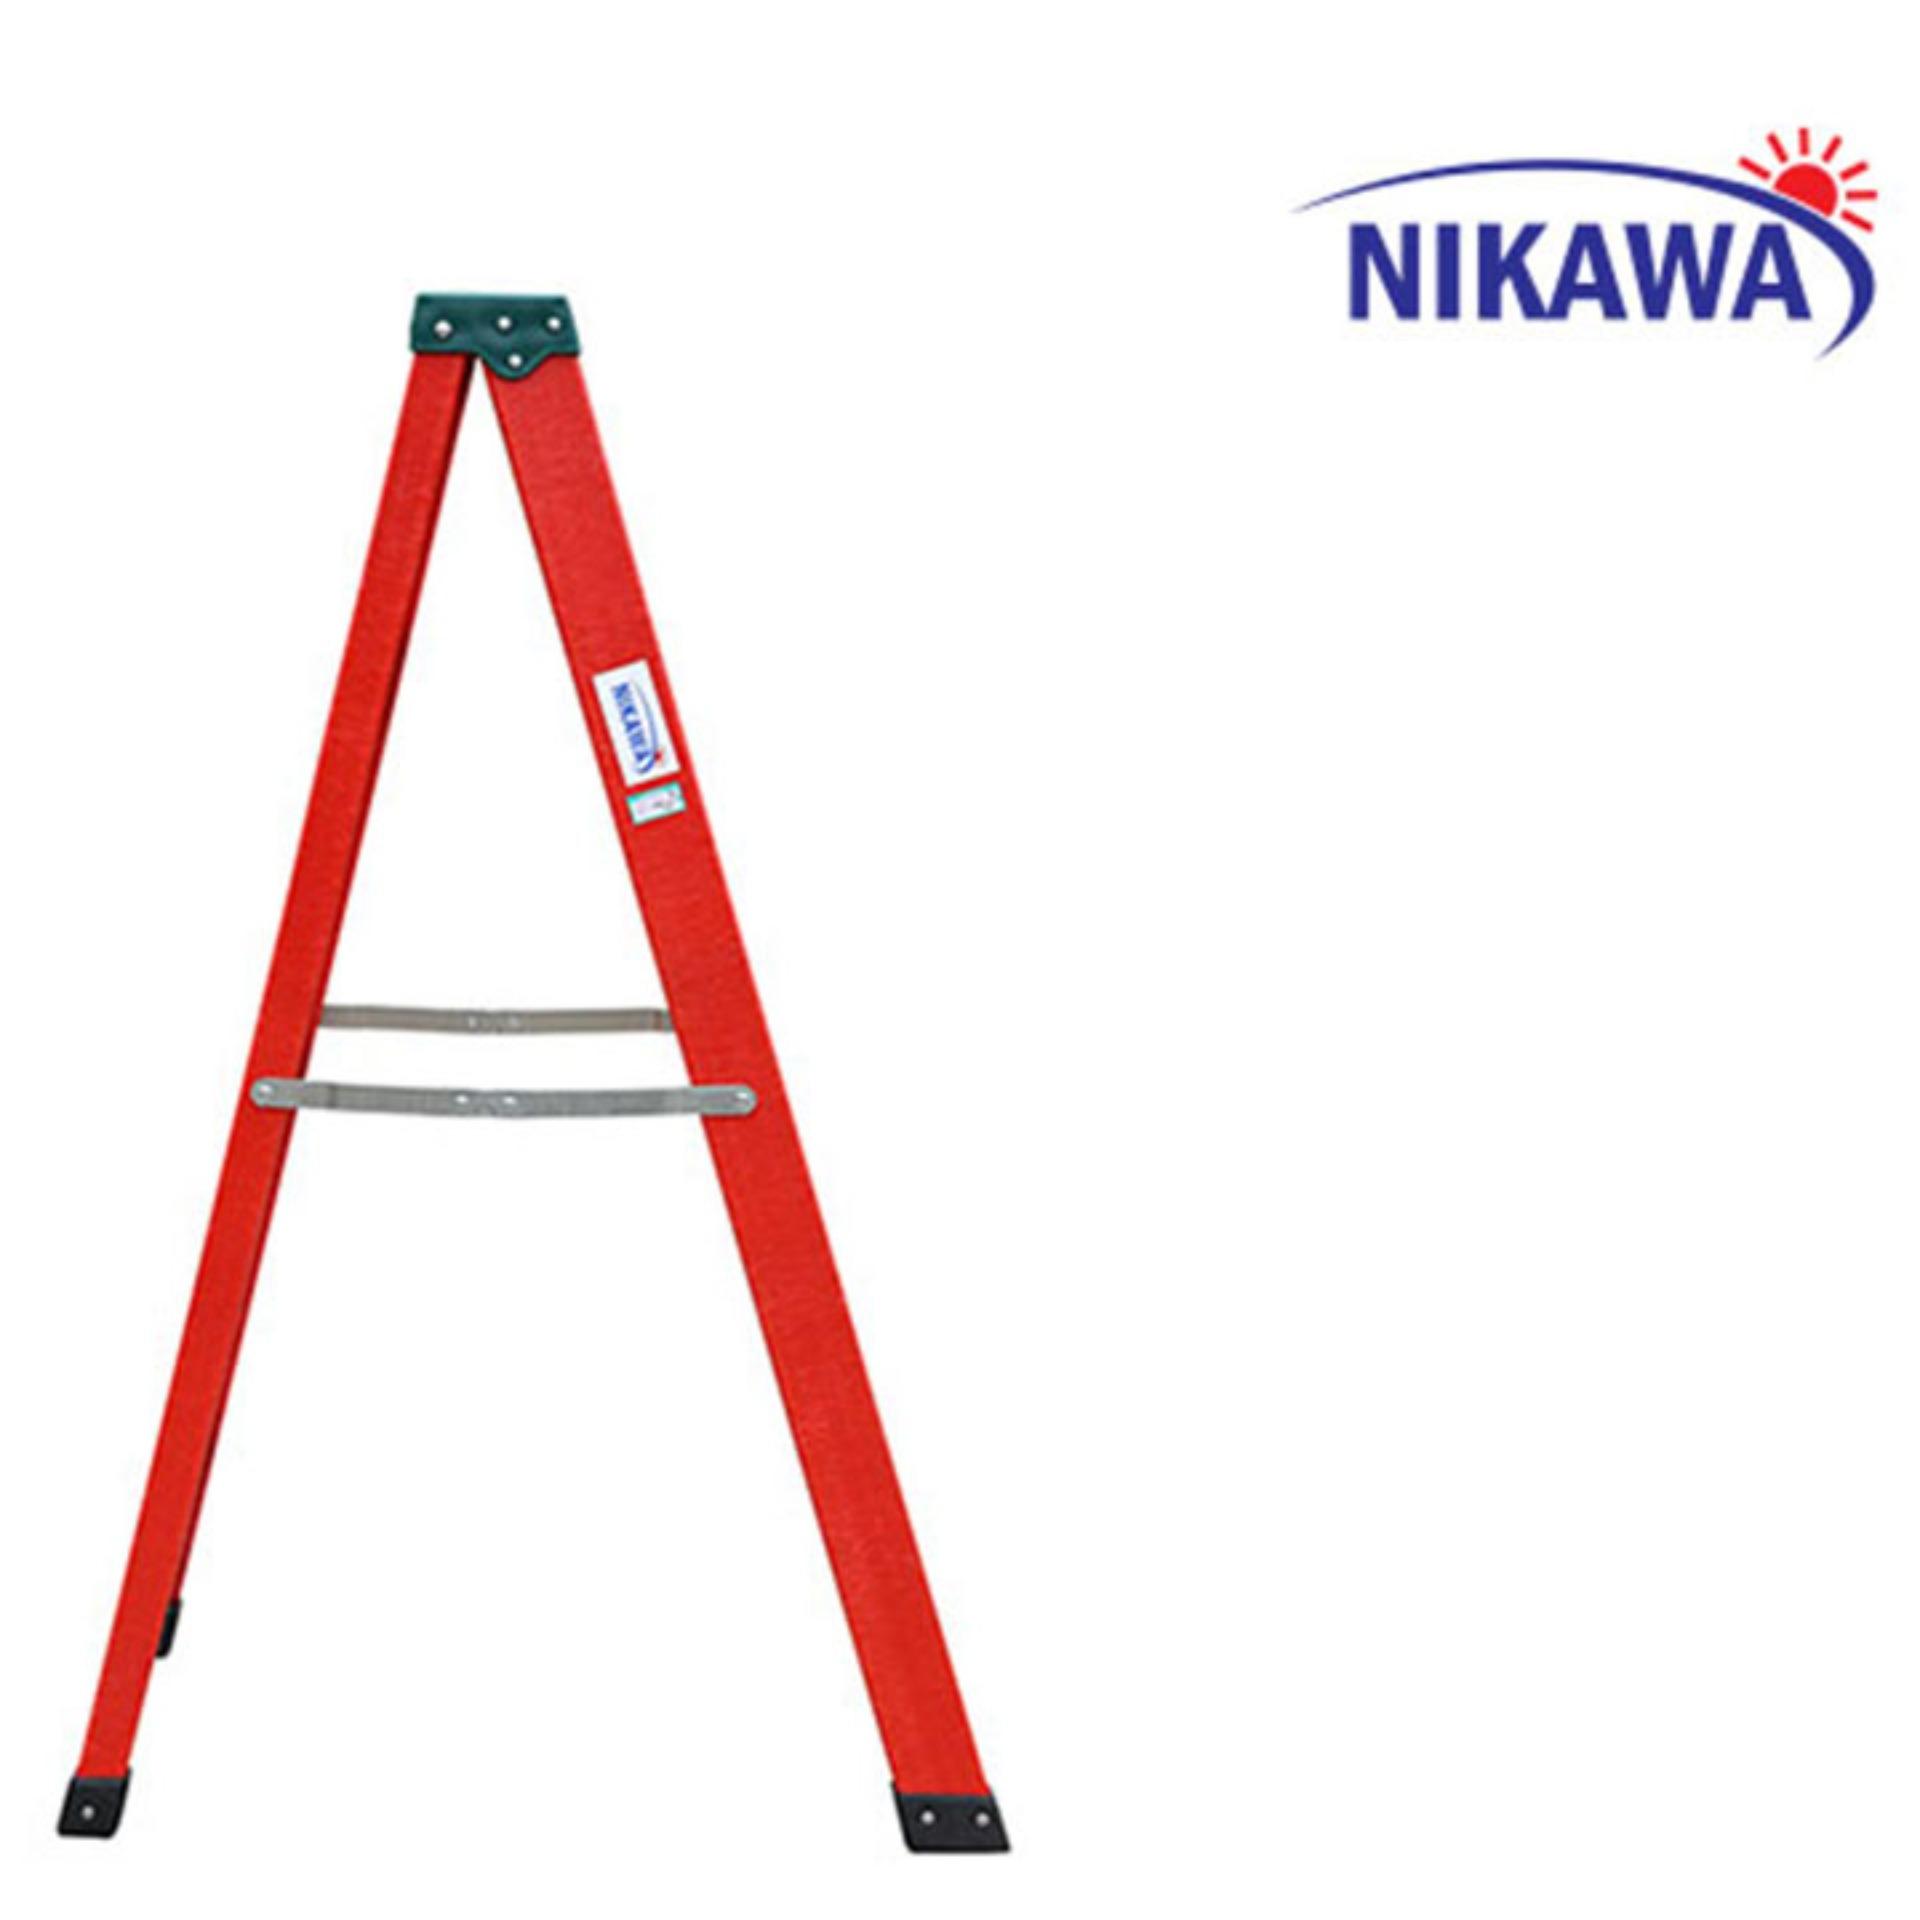 Thang nhôm chữ A Nikawa NKJ8C Nhật Bản - 2,31m cách điện